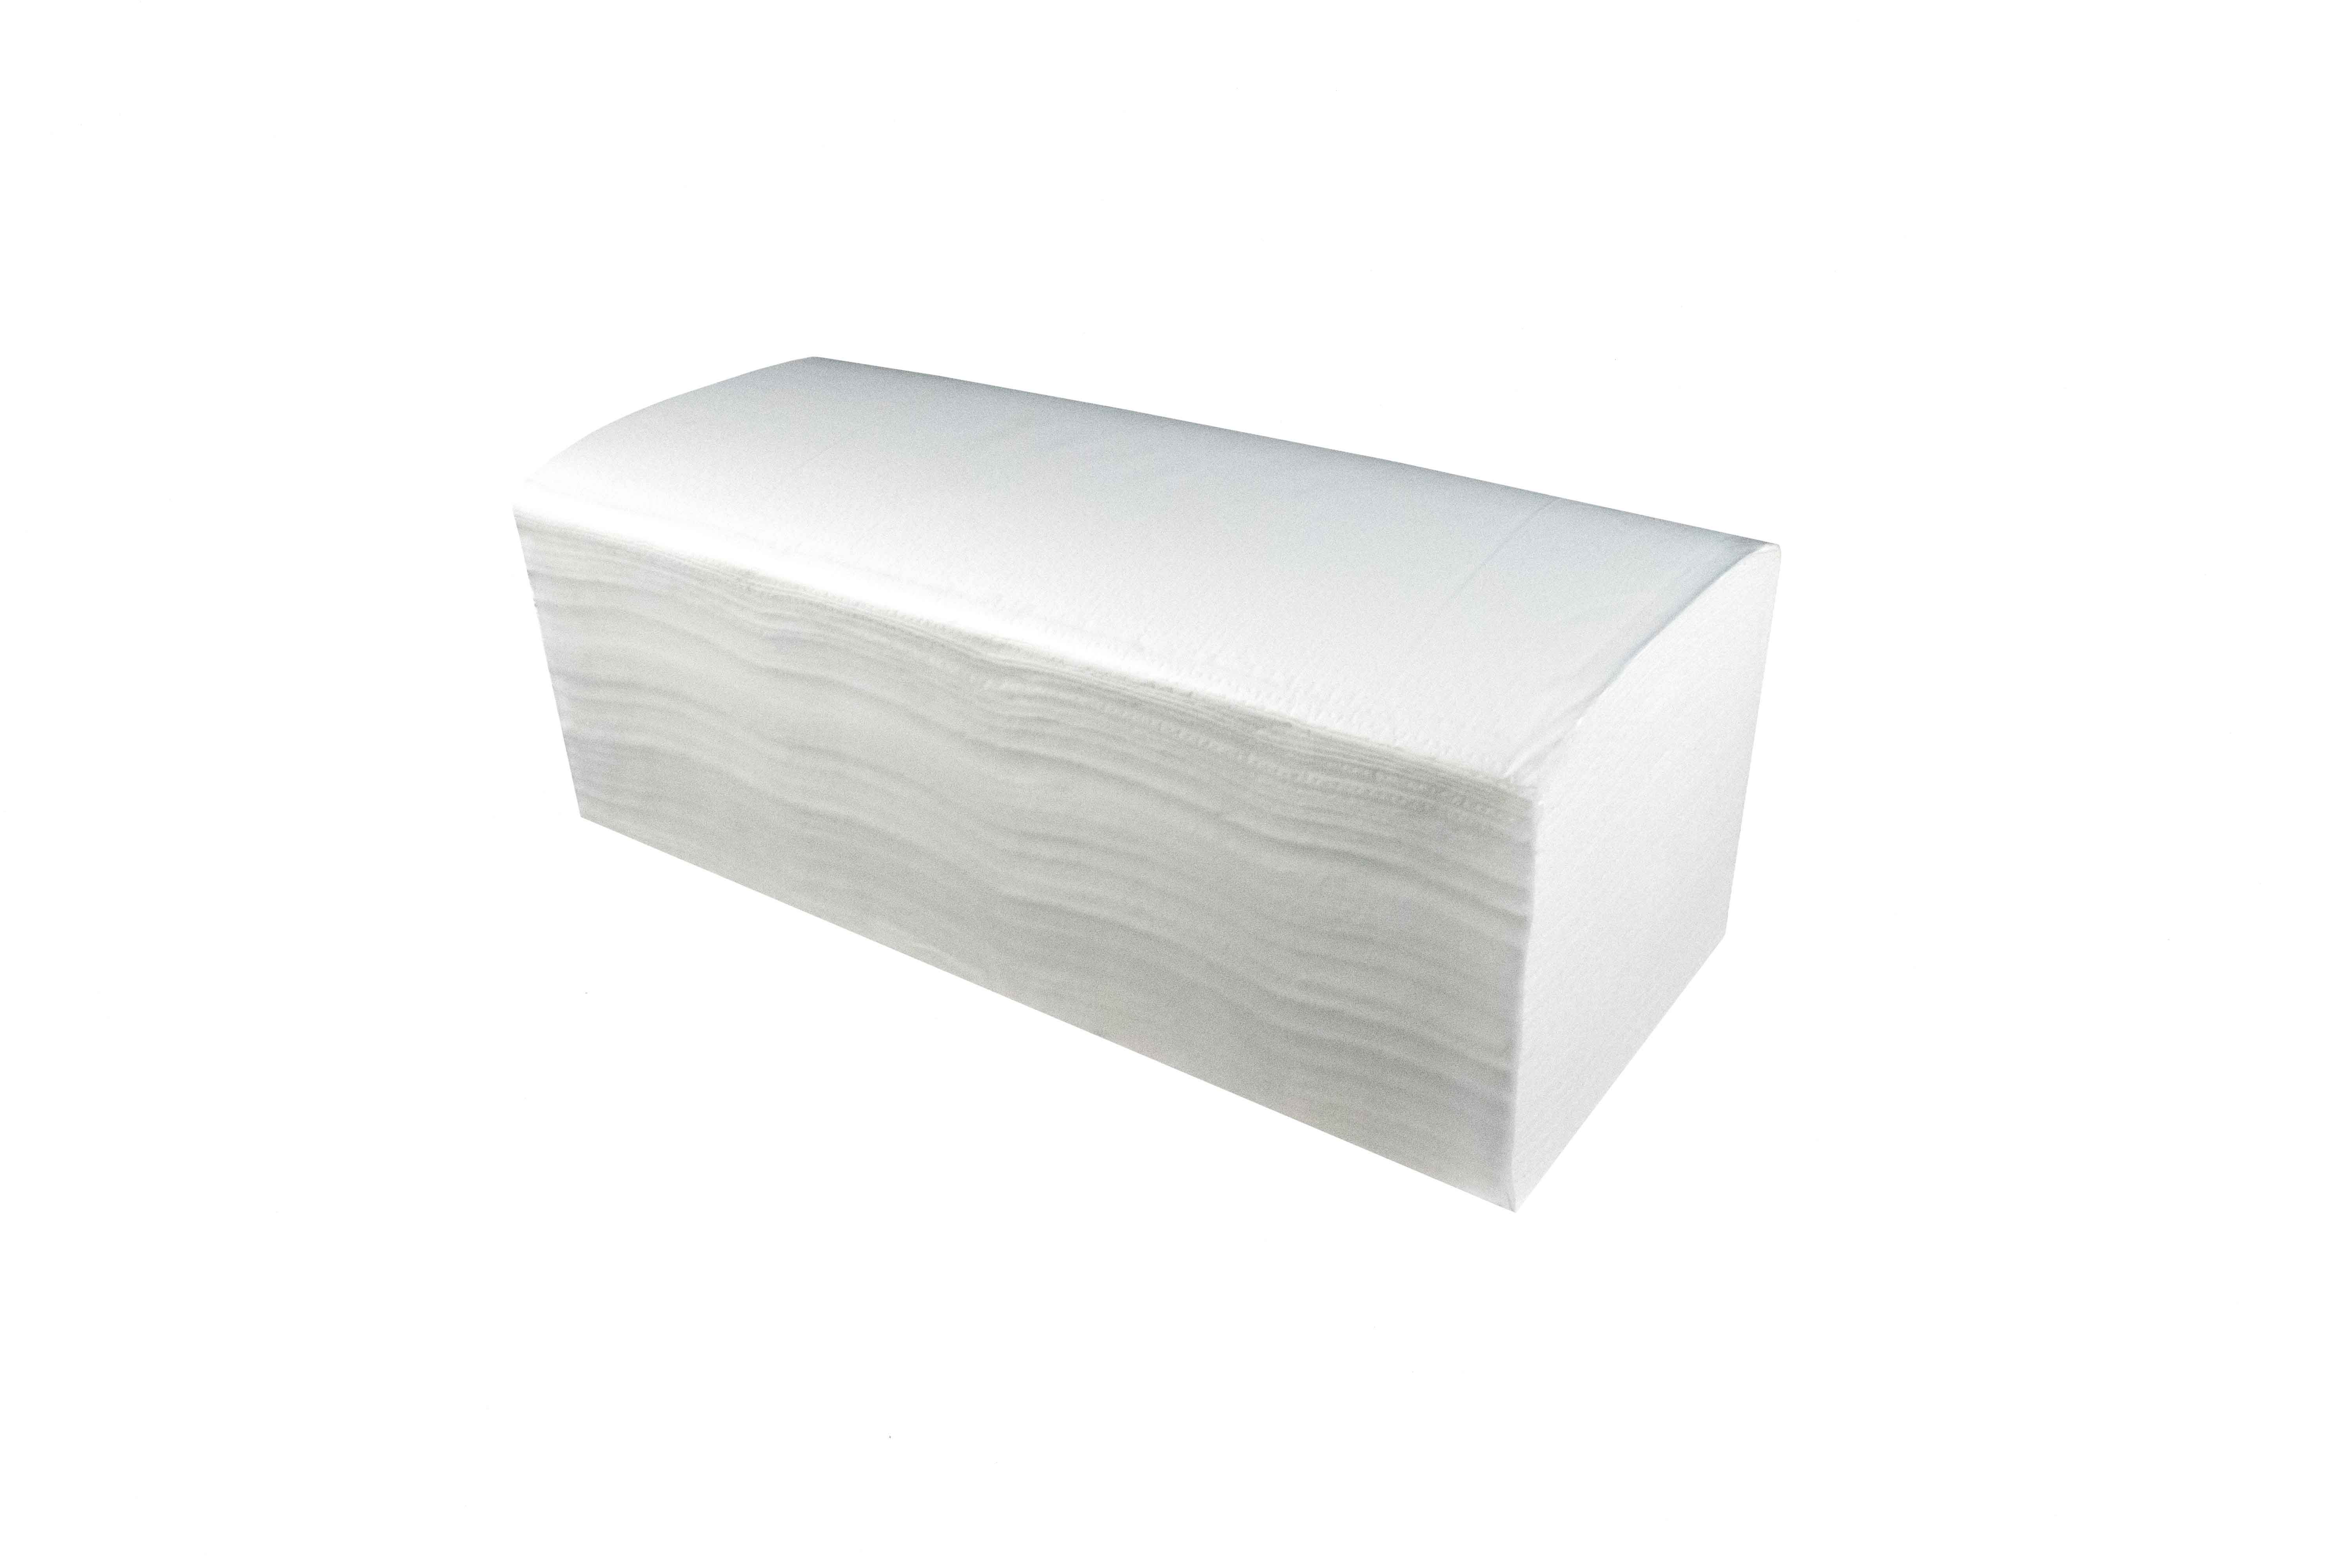 Papierhandtuch, weiß, 2-lagig, 24 x 21 cm, 4000 Stk/Ktn